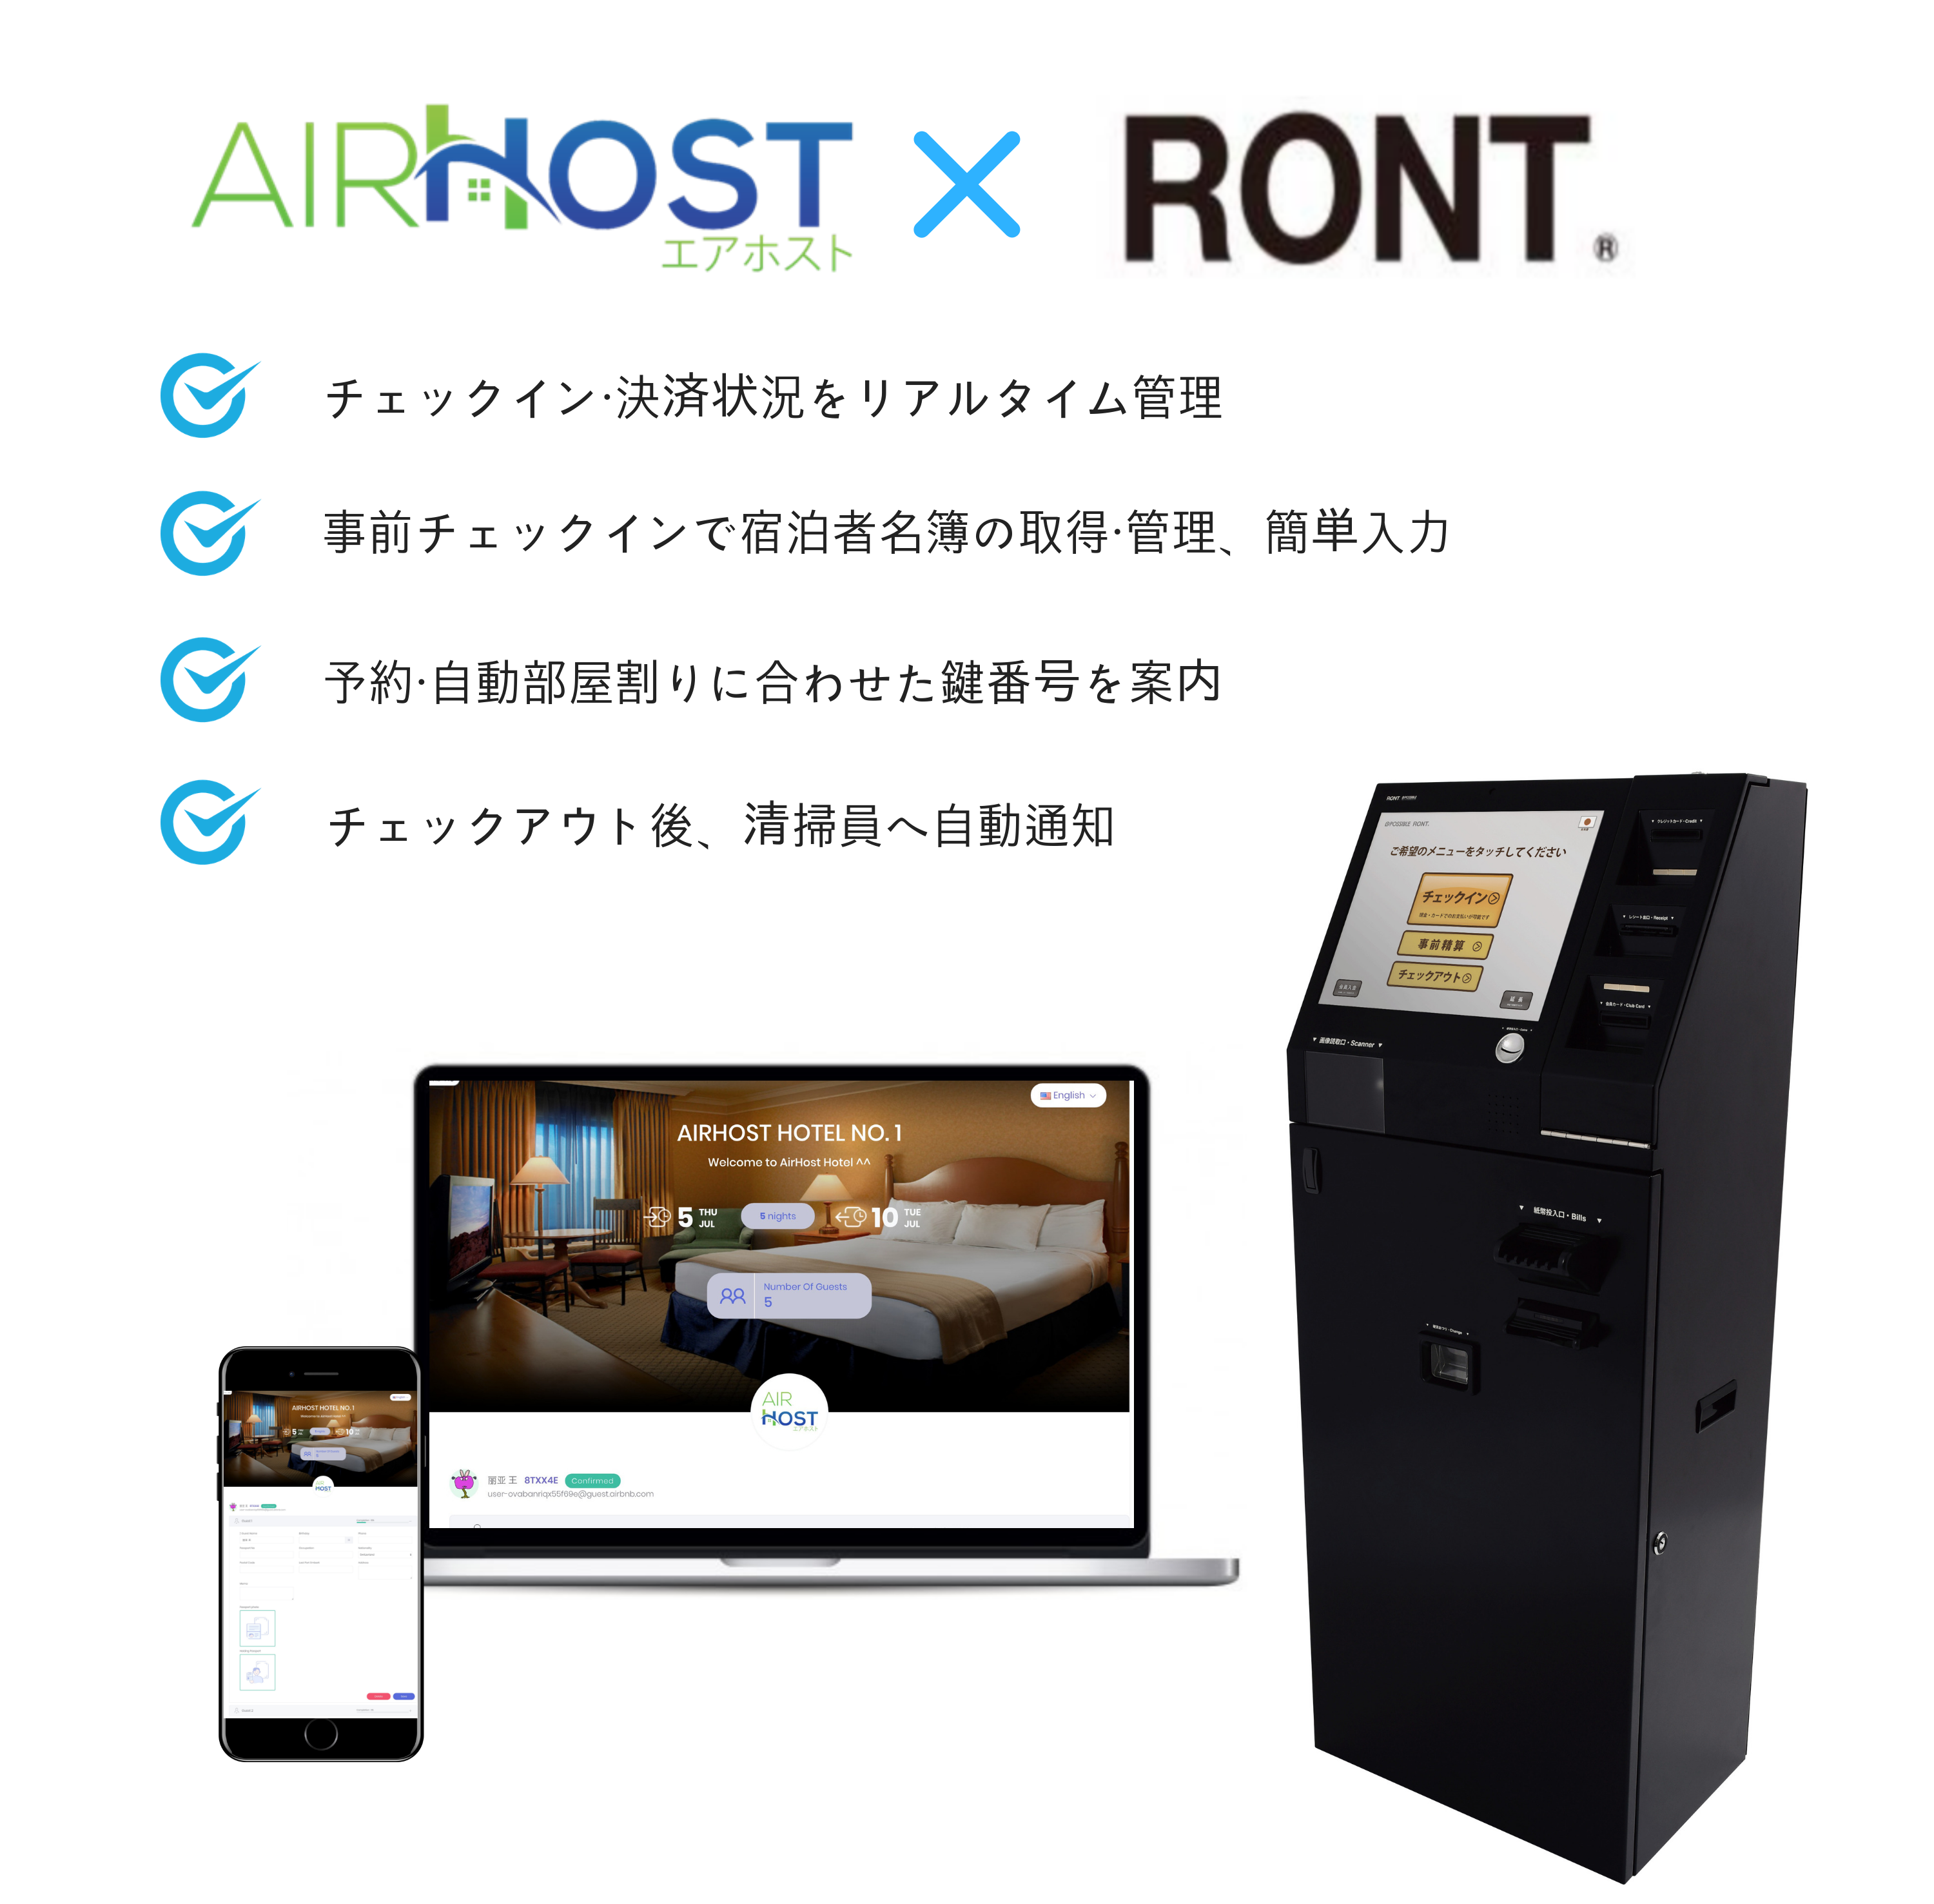 Airhost Pms ホテル当日現地決済に対応できる多機能自動精算機 Ront とapi連携を開始 Airhostのプレスリリース